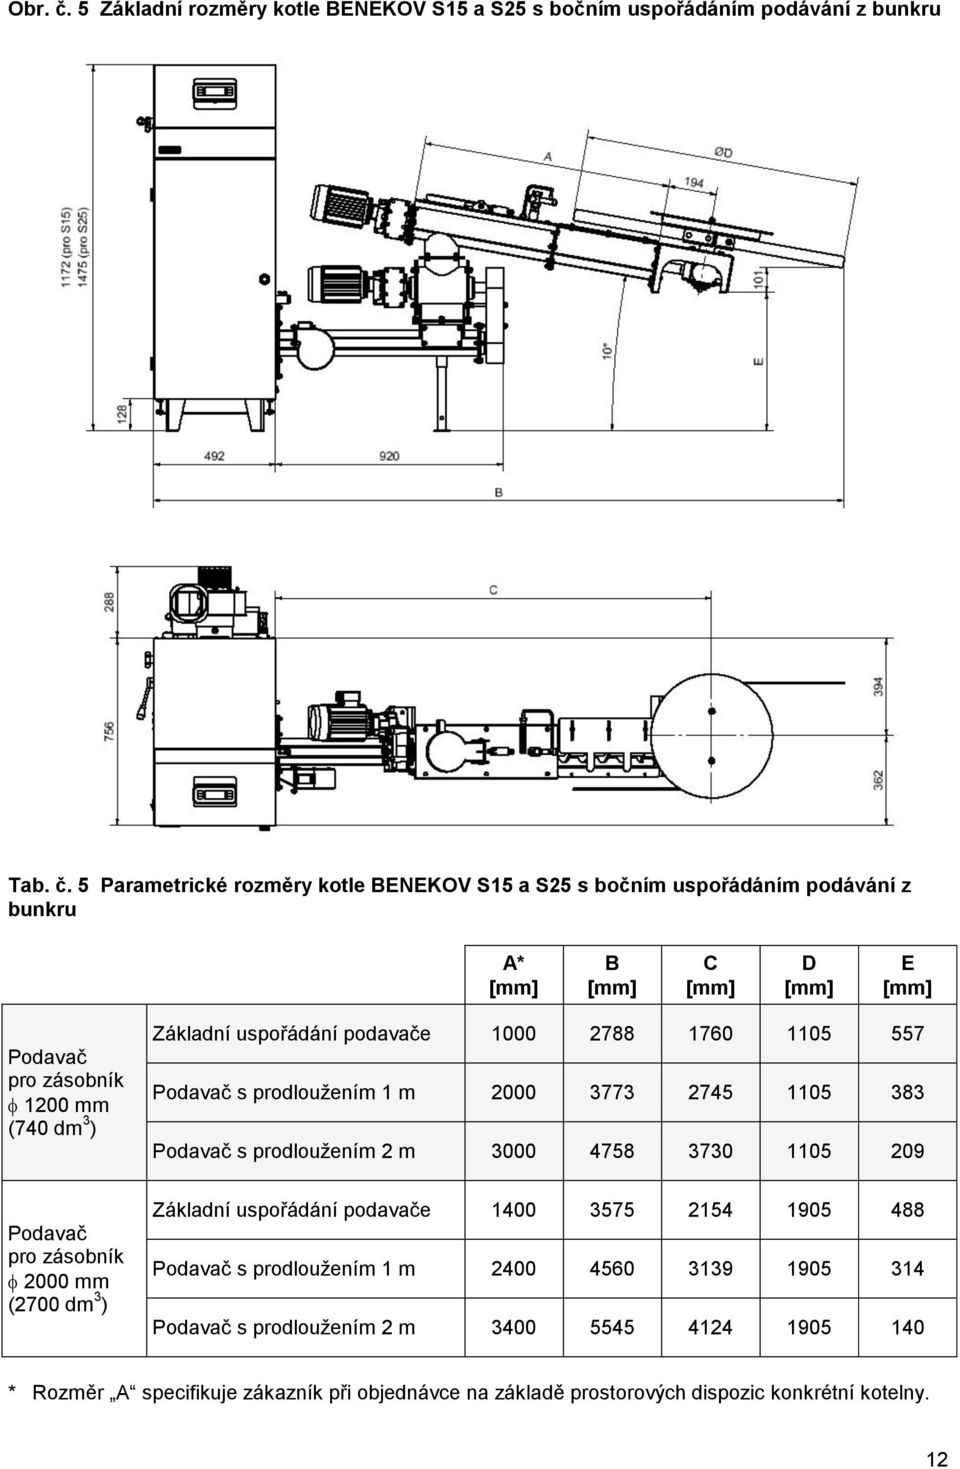 5 Parametrické rozměry kotle BENEKOV S15 a S25 s bočním uspořádáním podávání z bunkru A* B C D E Podavač pro zásobník 1200 mm (740 dm 3 ) Základní uspořádání podavače 1000